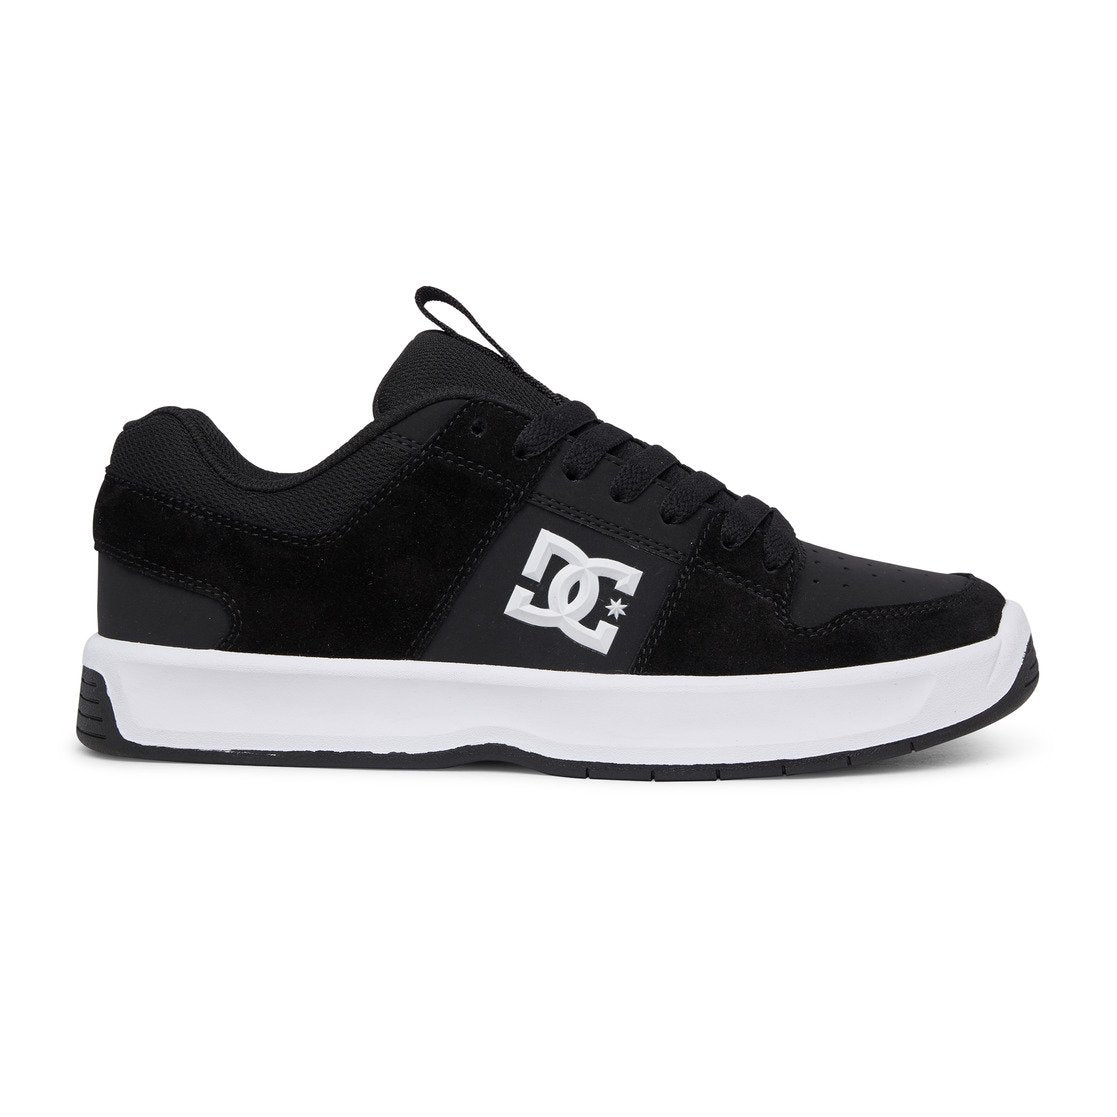 Dc Shoes Lynx Zero Skateschuh - Schwarz/Weiß | Meistverkaufte Produkte | Neue Produkte | Neueste Produkte | surfdevils.com